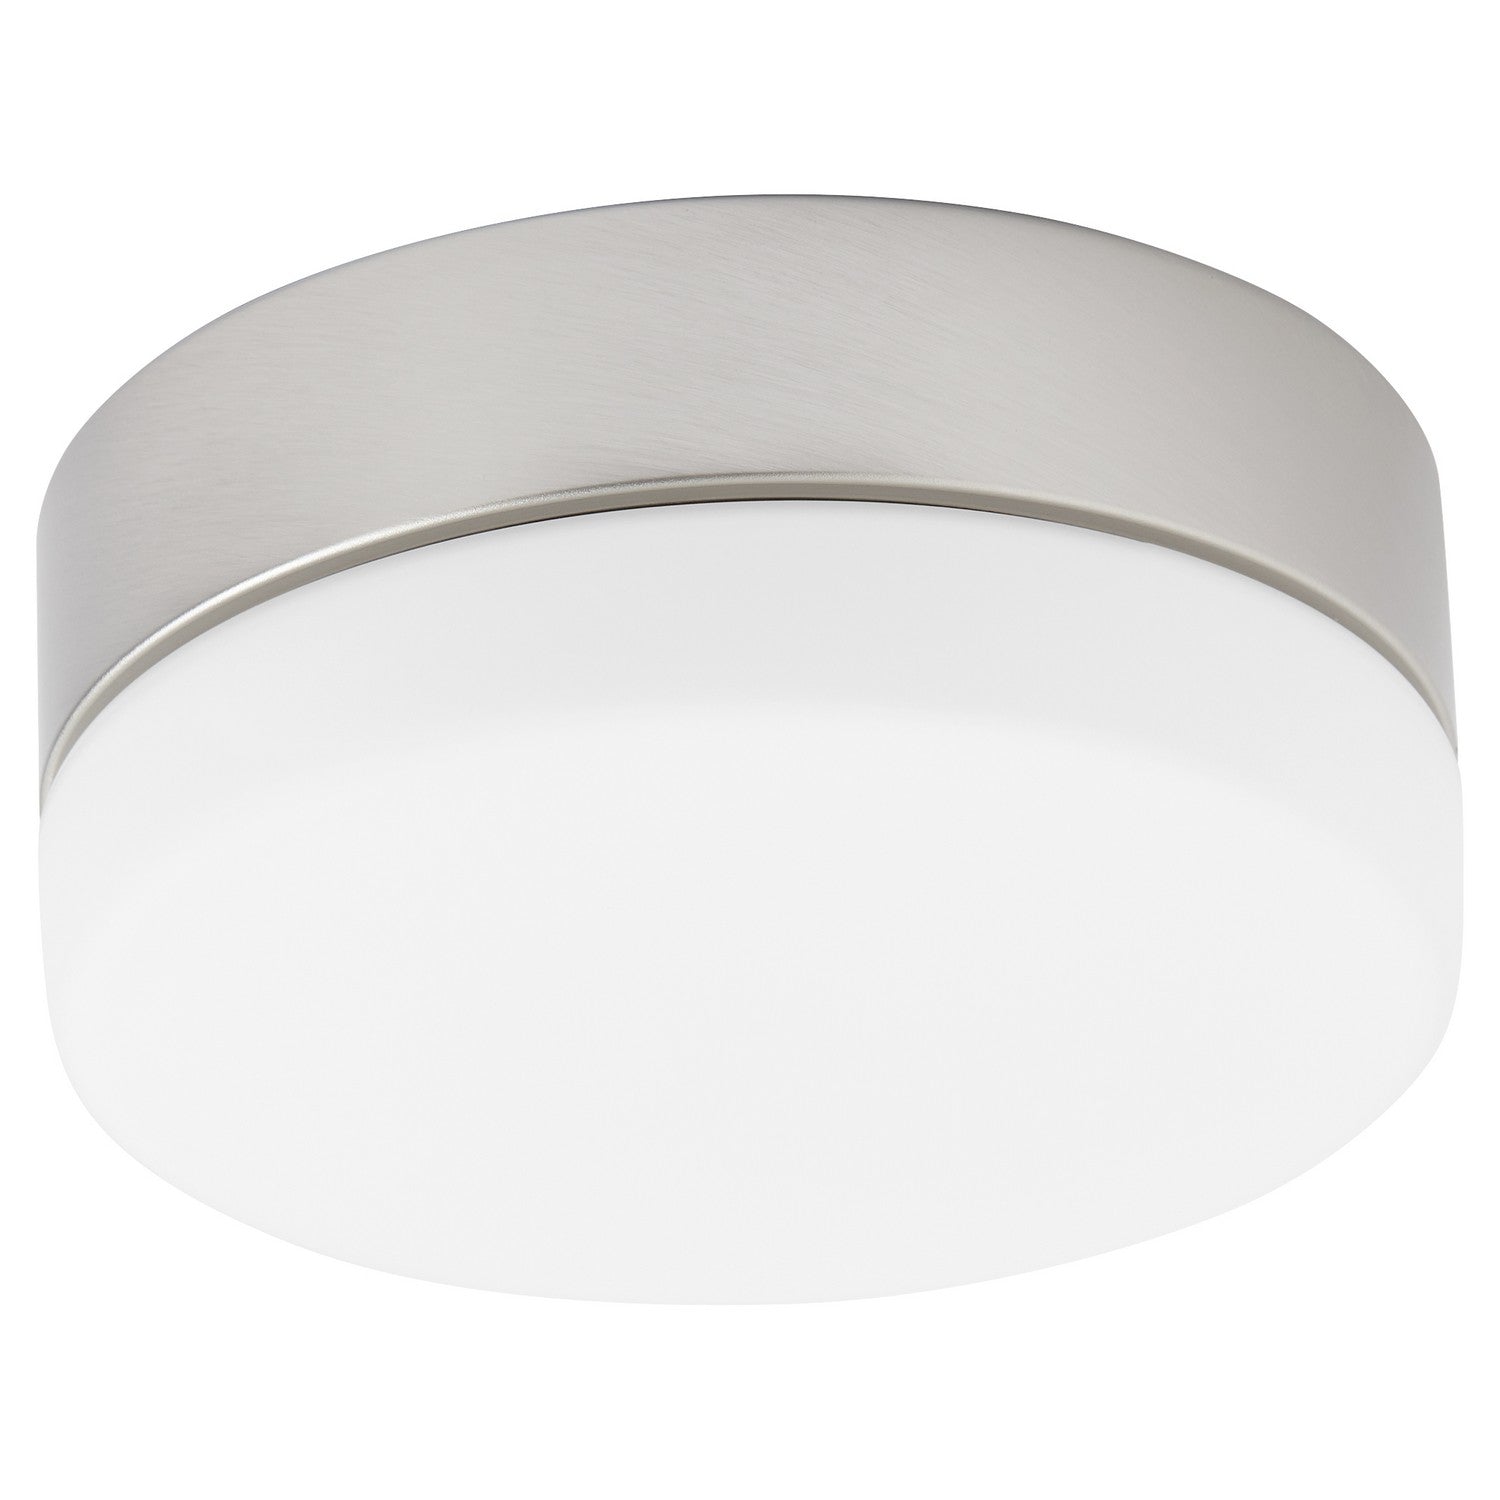 Oxygen ALLEGRO 3-9-119-24 Ceiling Fan LED Light Kit - Satin Nickel